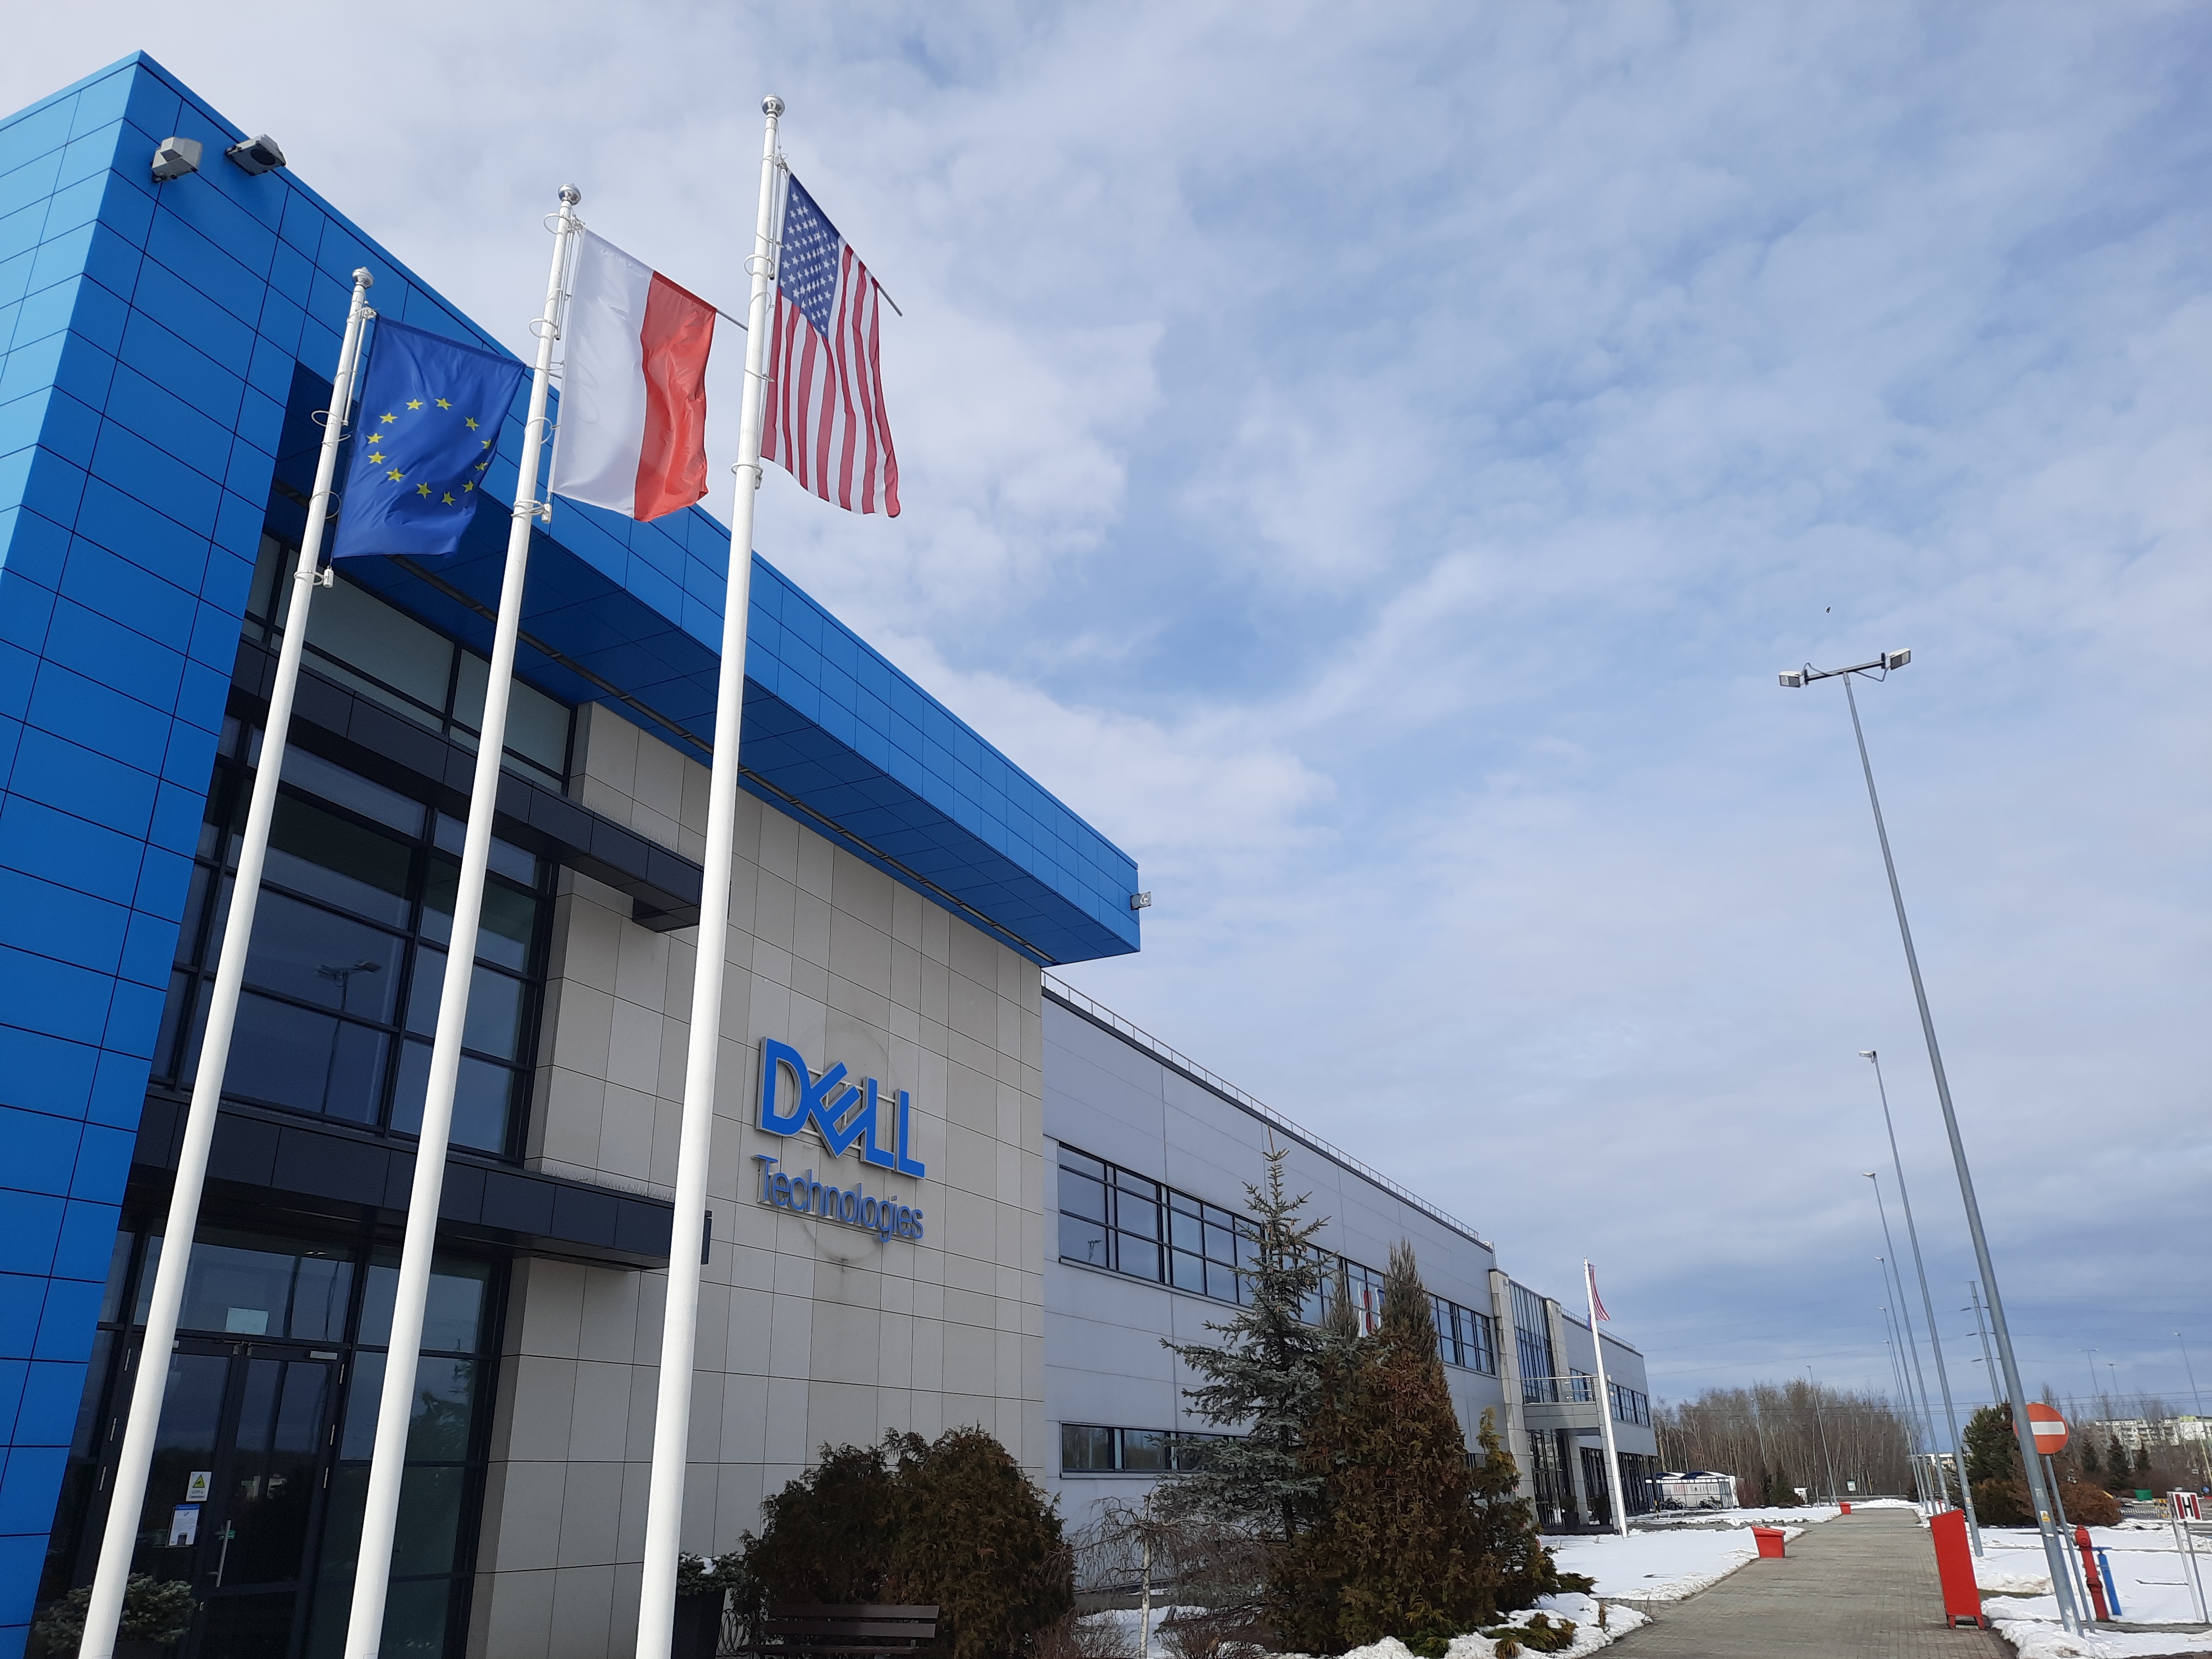 Intratel zabiera klientów na wycieczkę do fabryki Dell Technologies w Łodzi